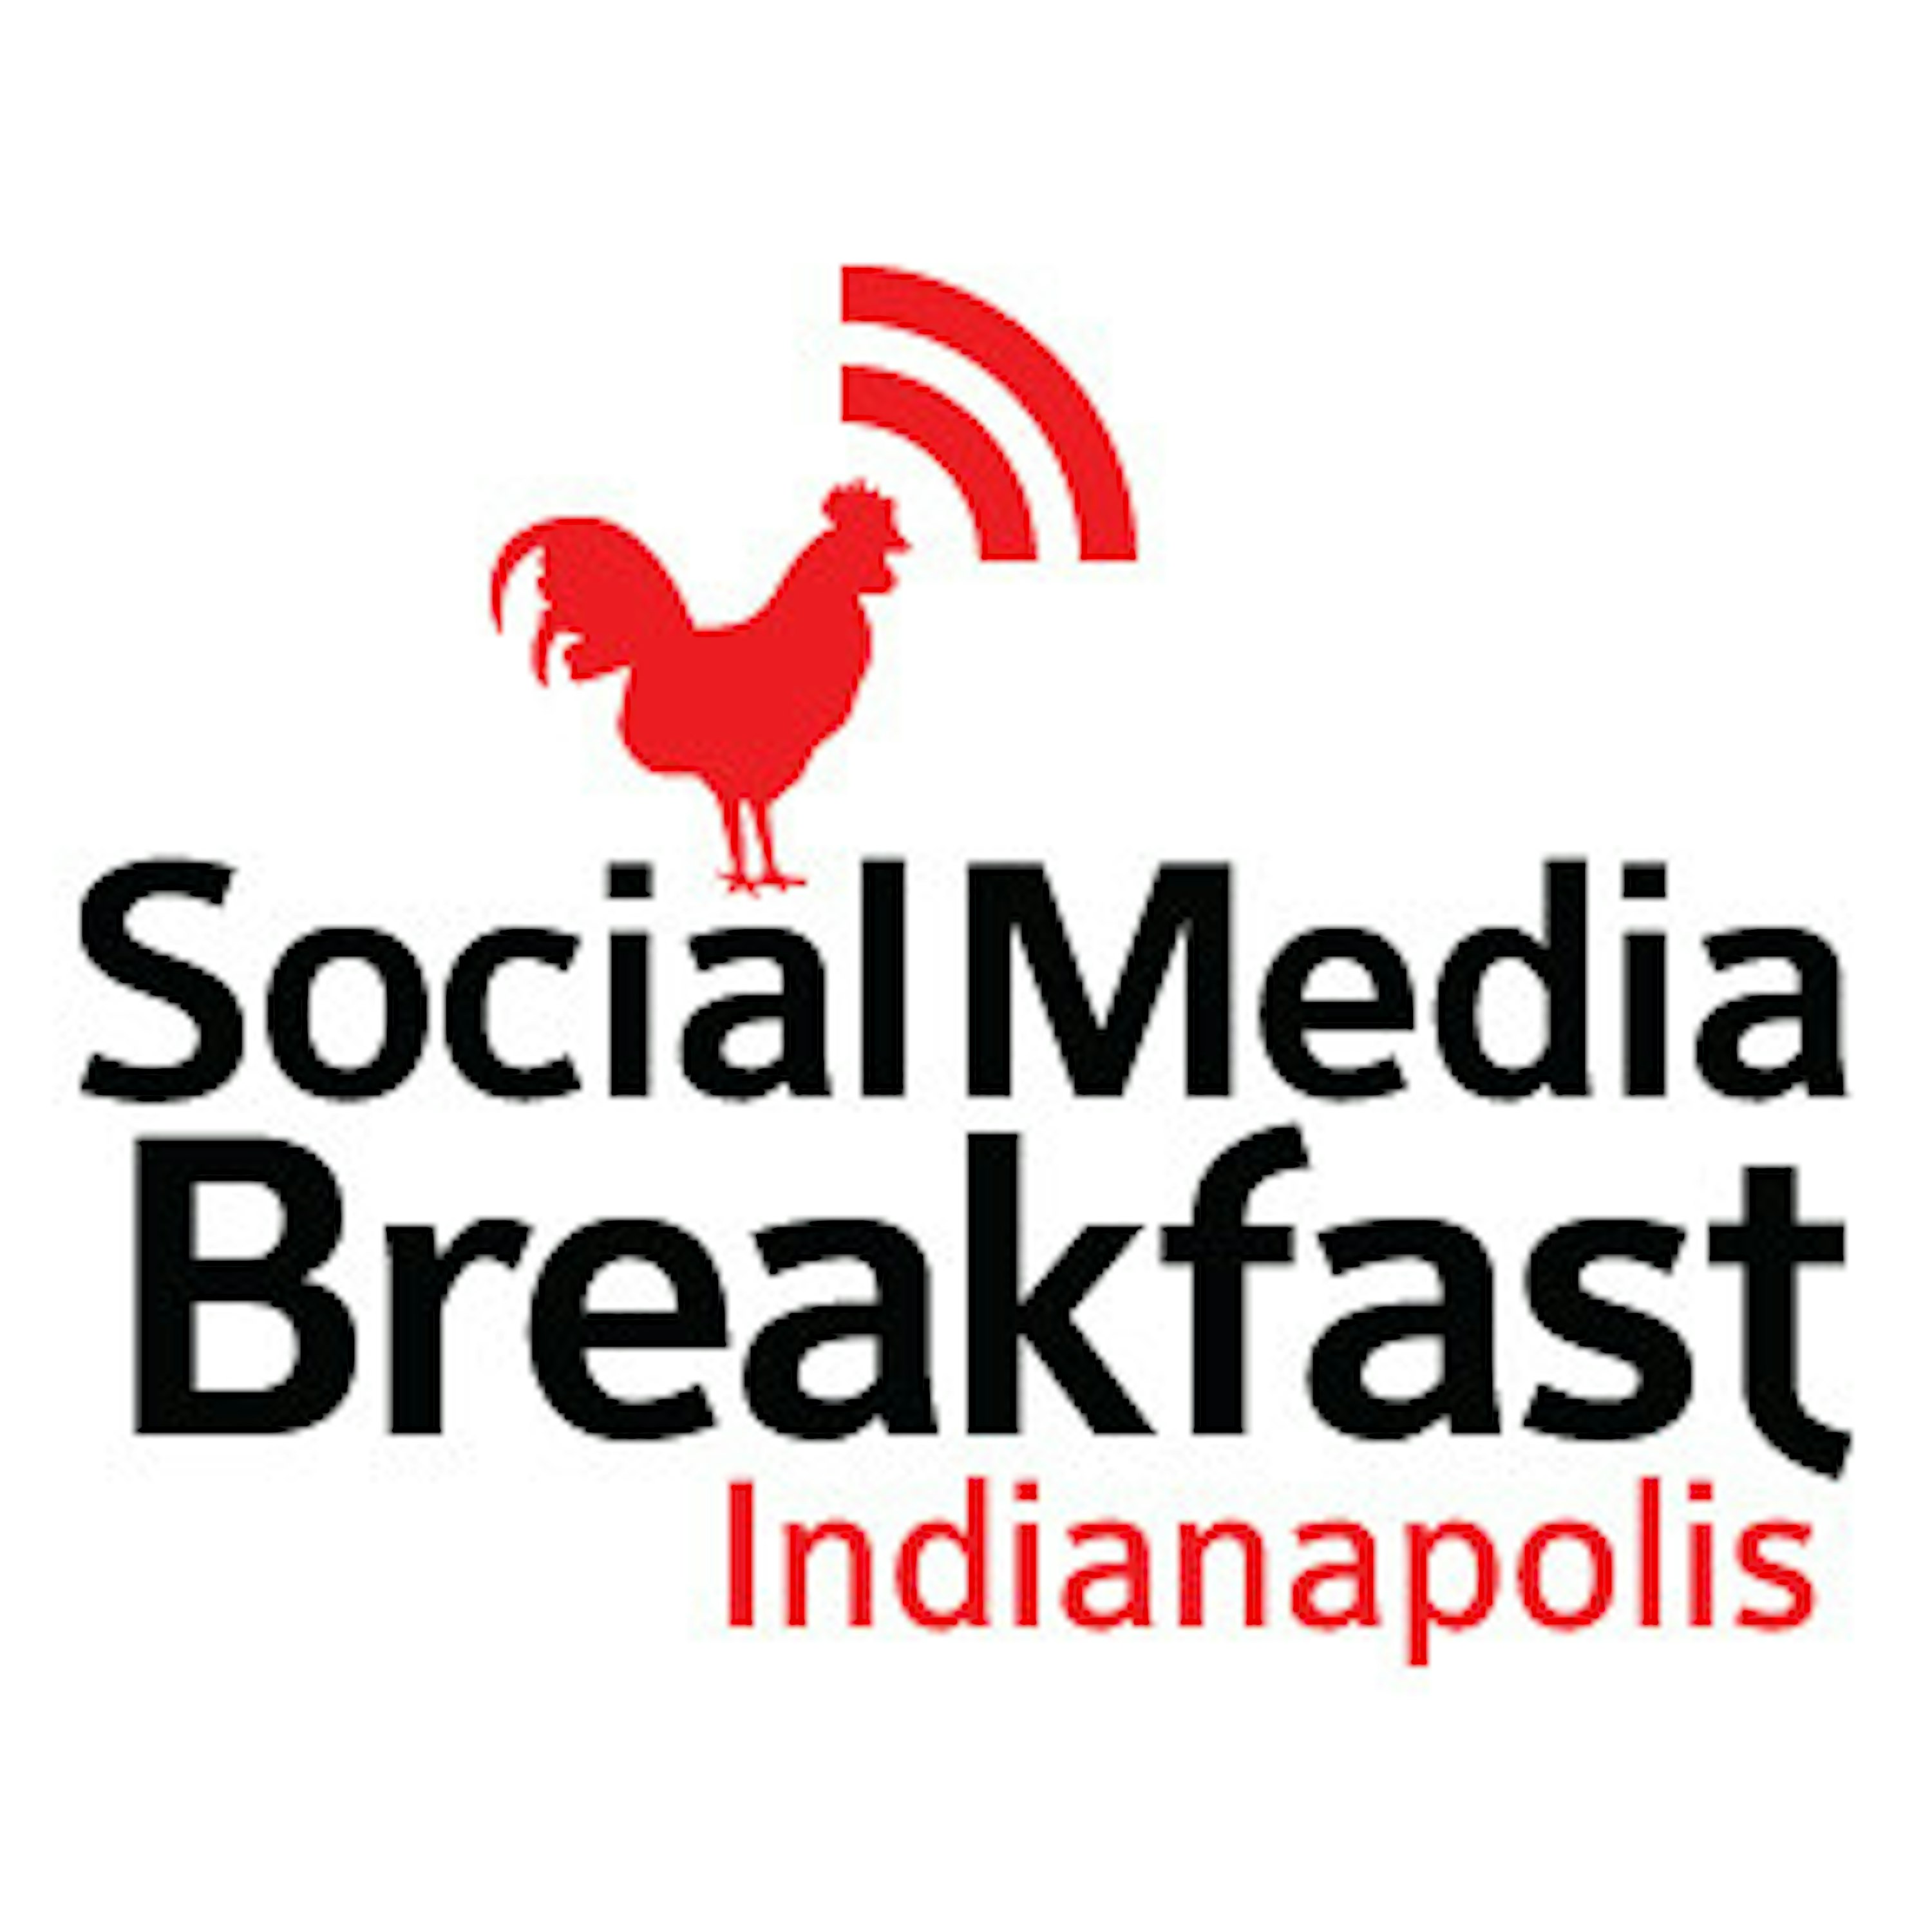 Indy Social Media Breakfast